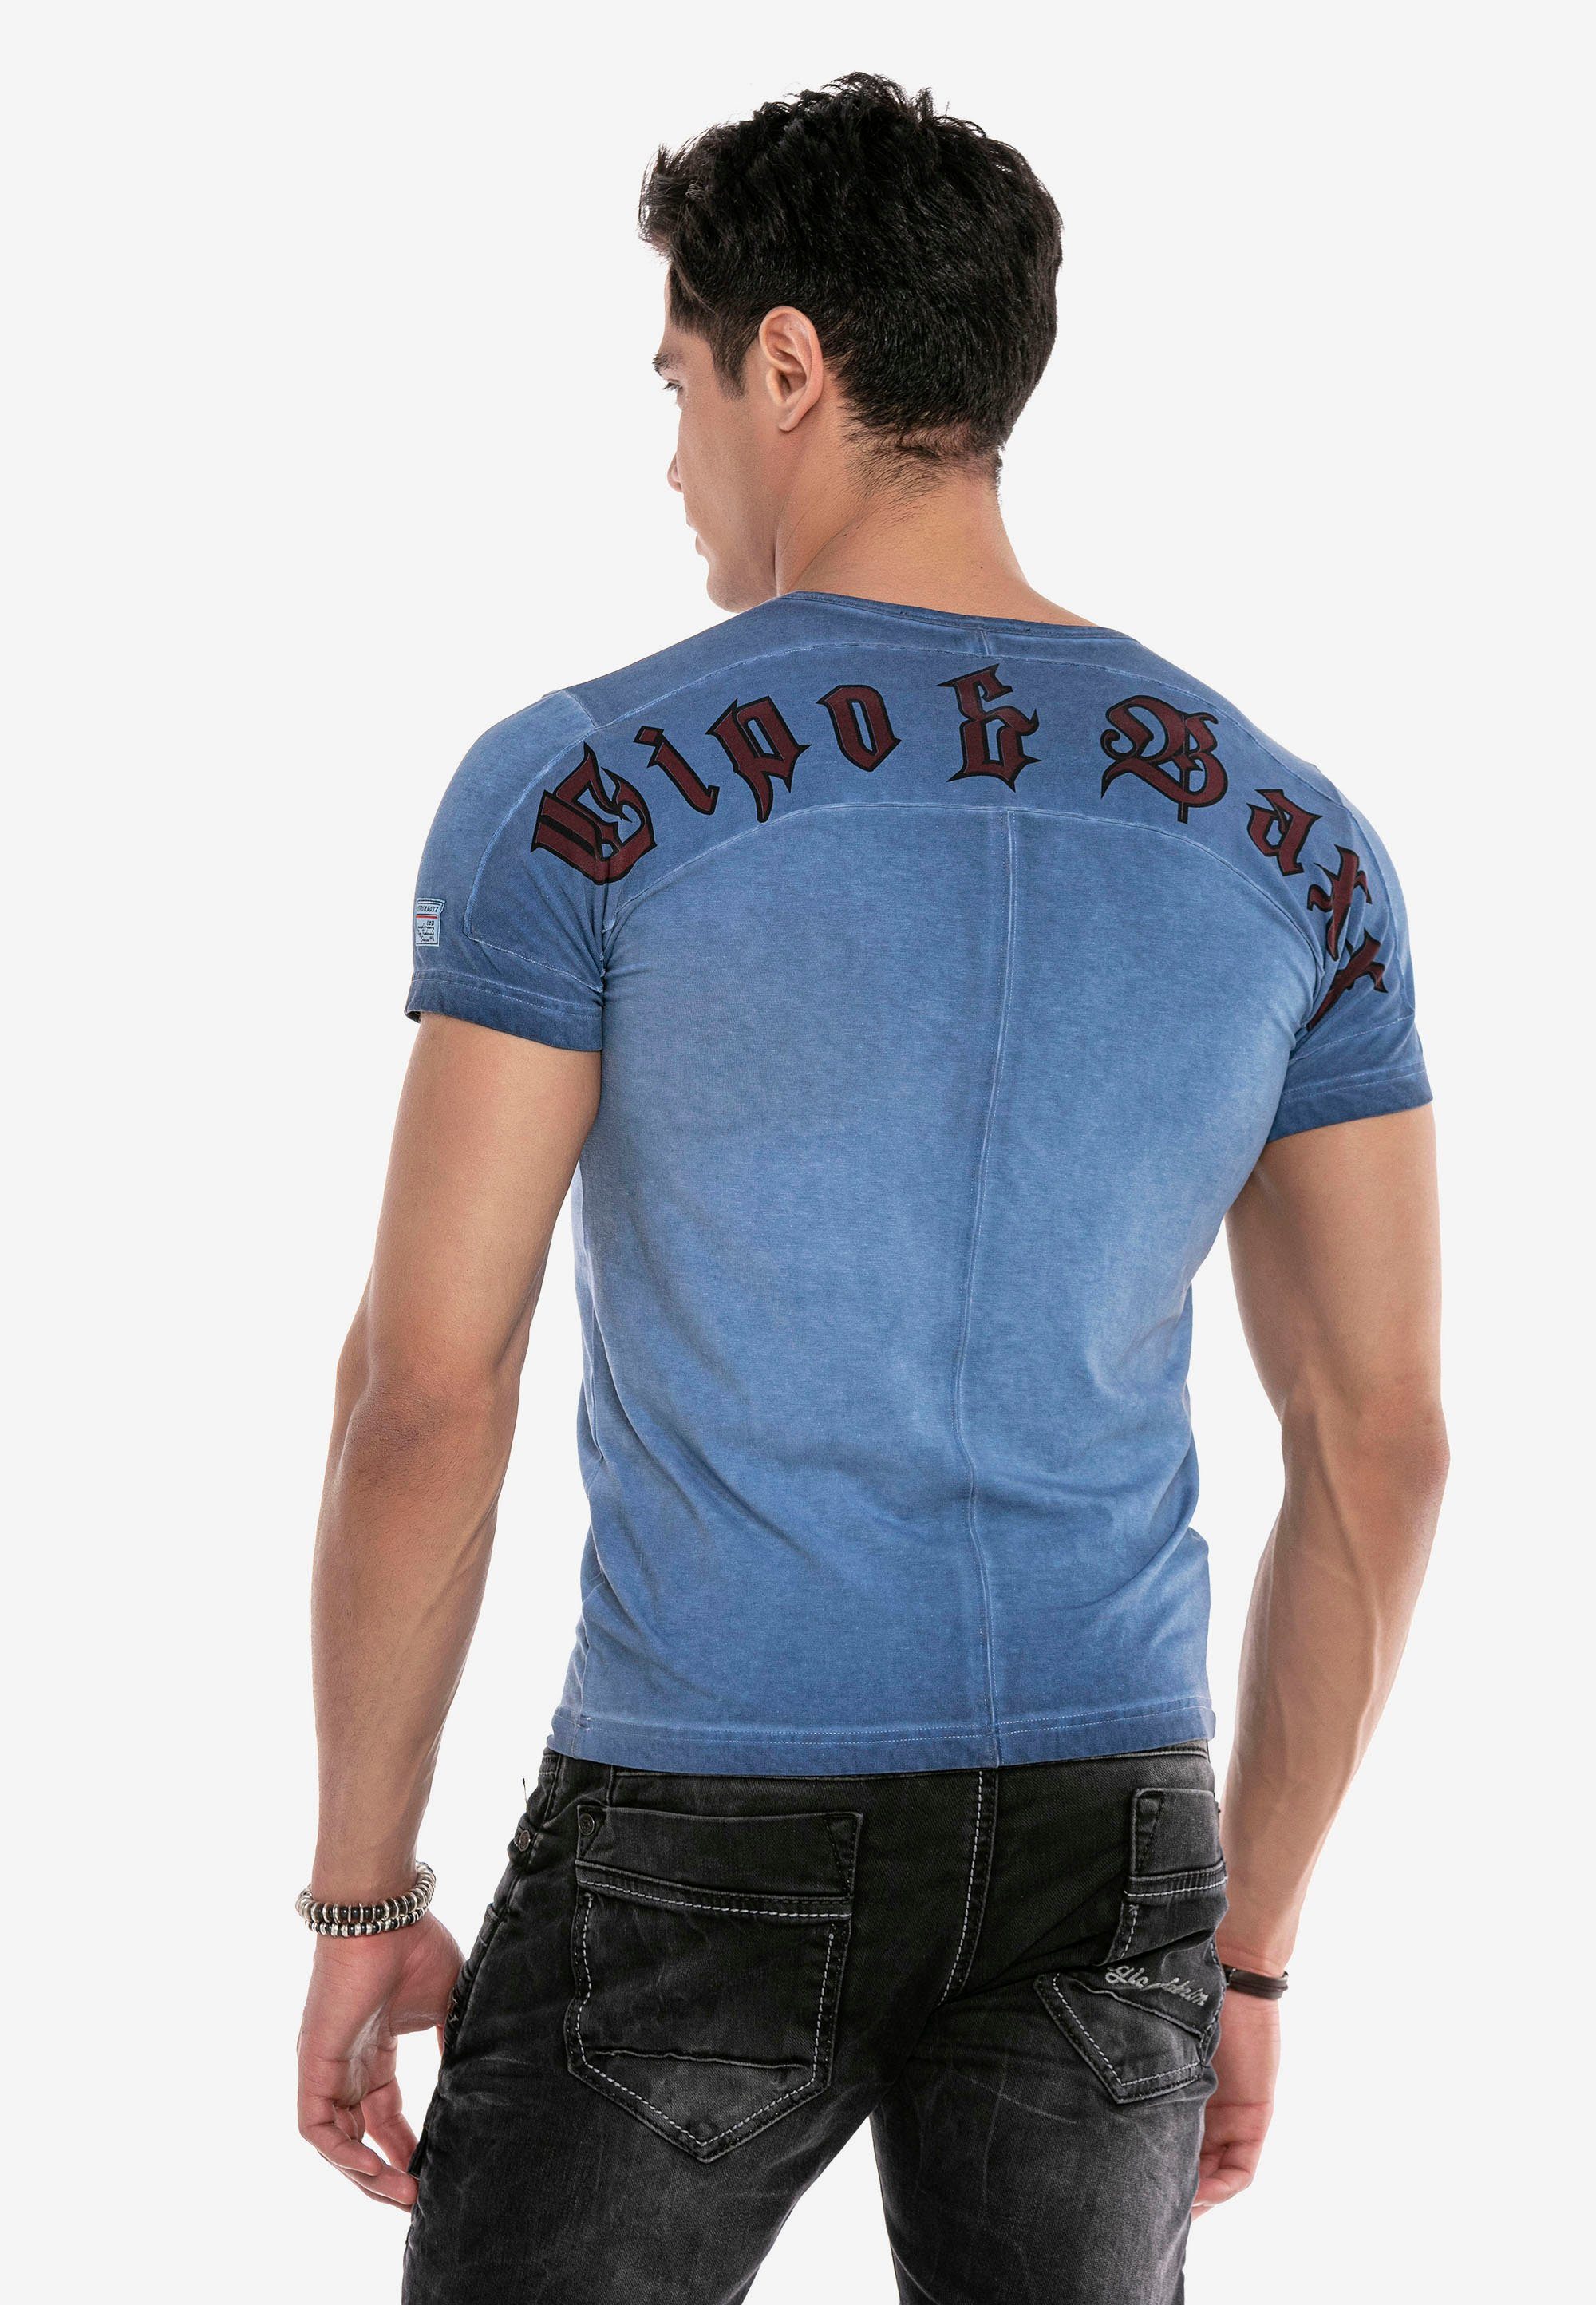 T-Shirt Aufdruck mit & Baxx blau Cipo Rock&Pace